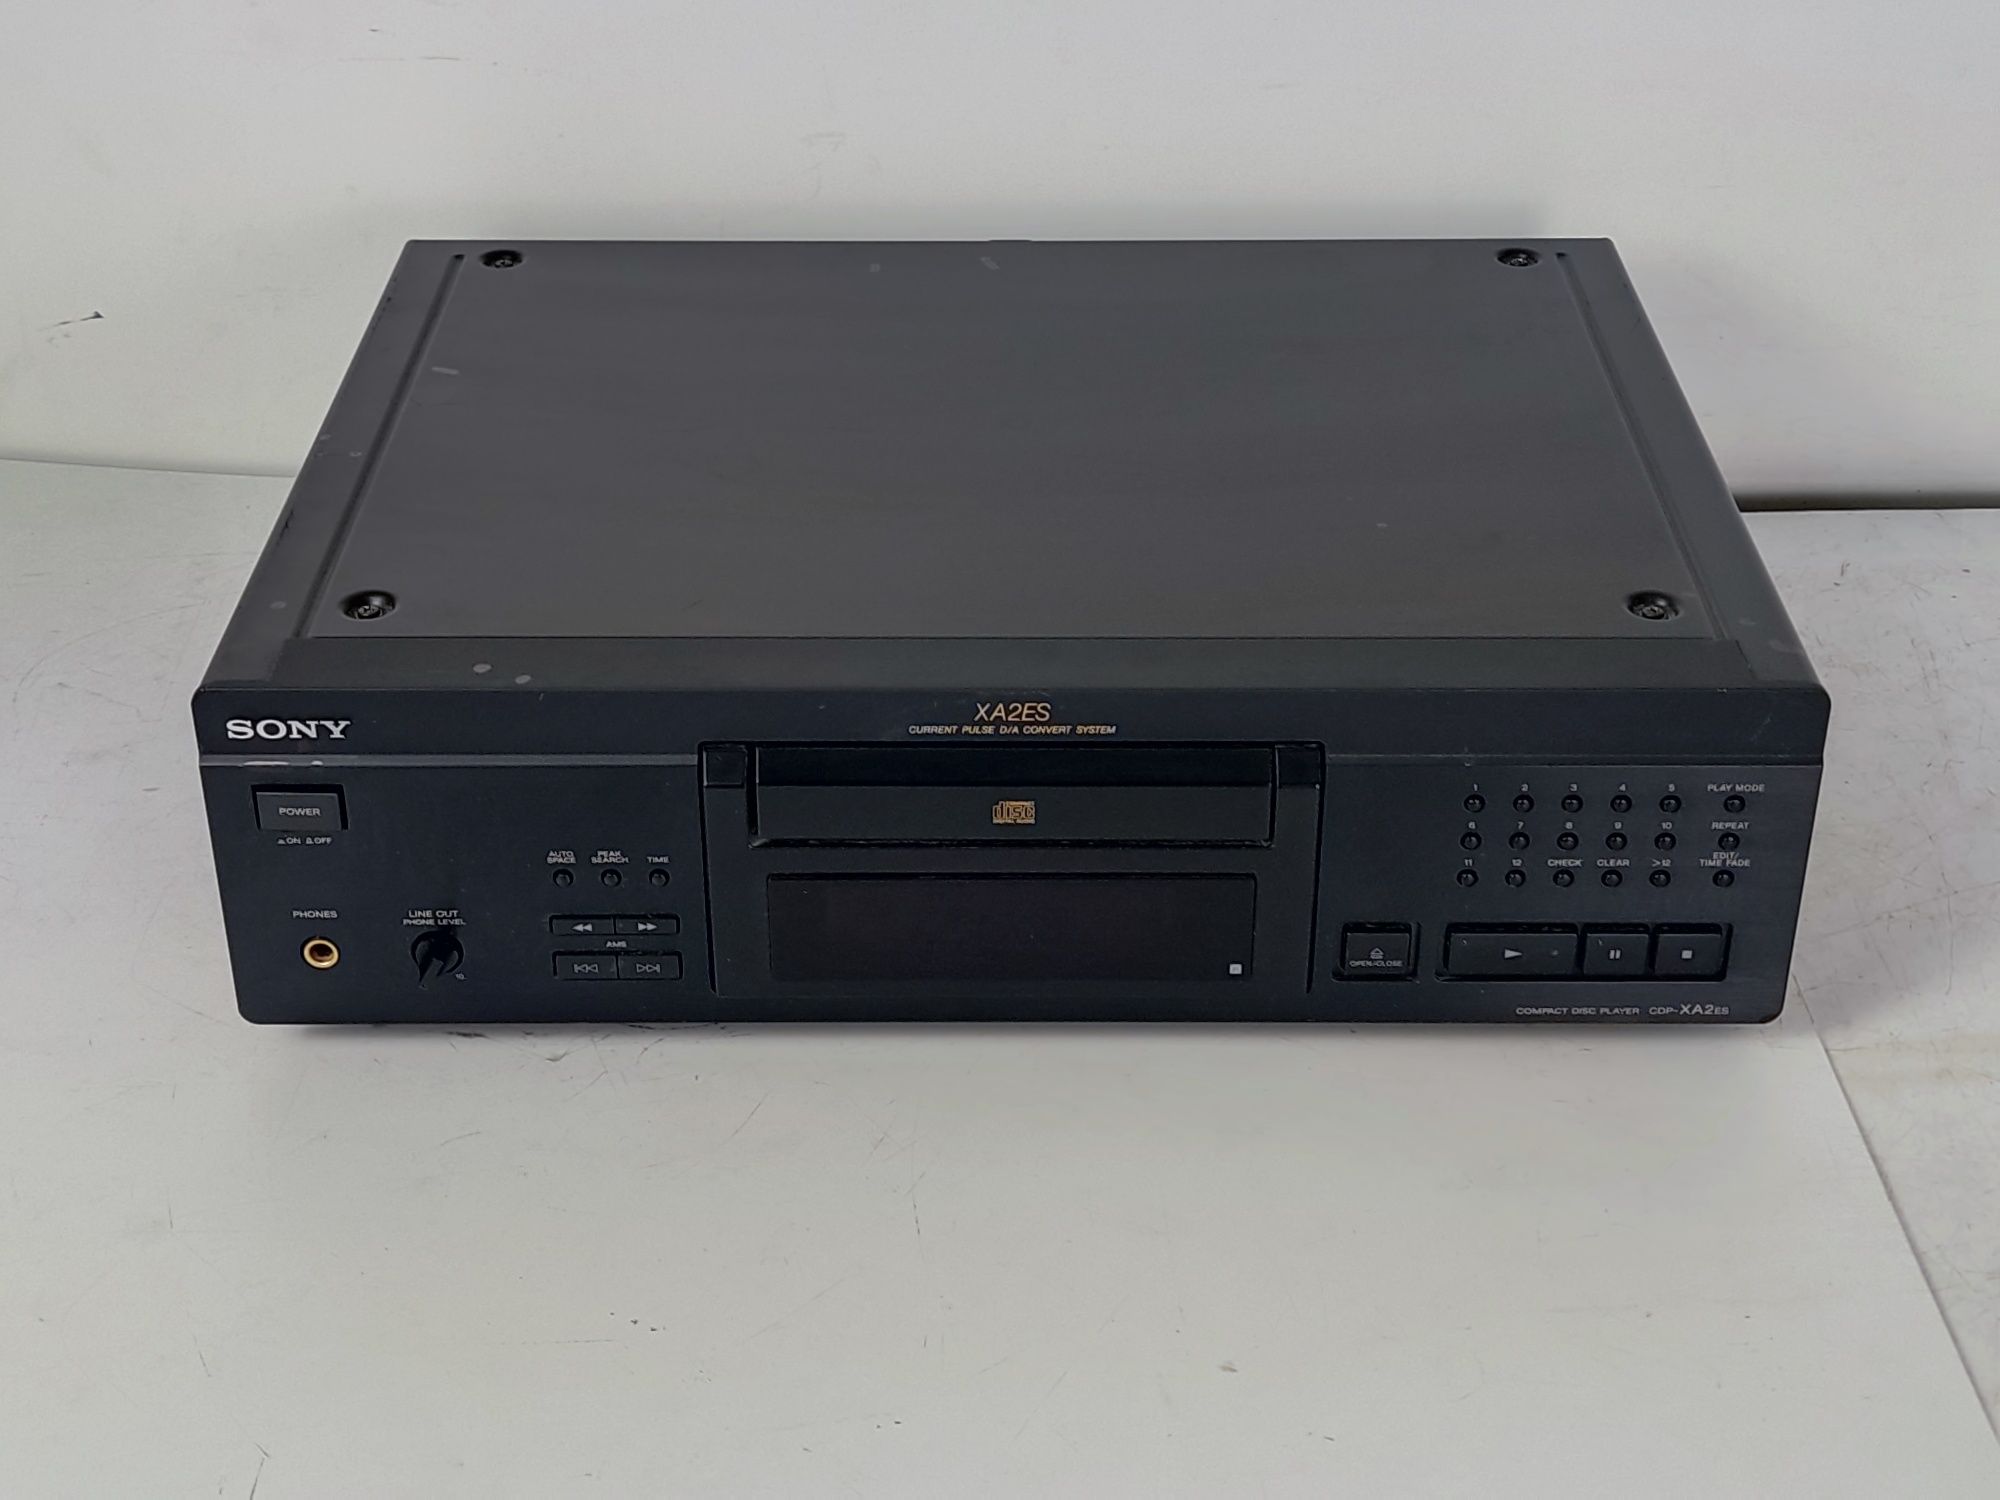 Sony XA2ES odtwarzacz CD AUDIOFILSKI kompakt compact DOBÓR AUDIO